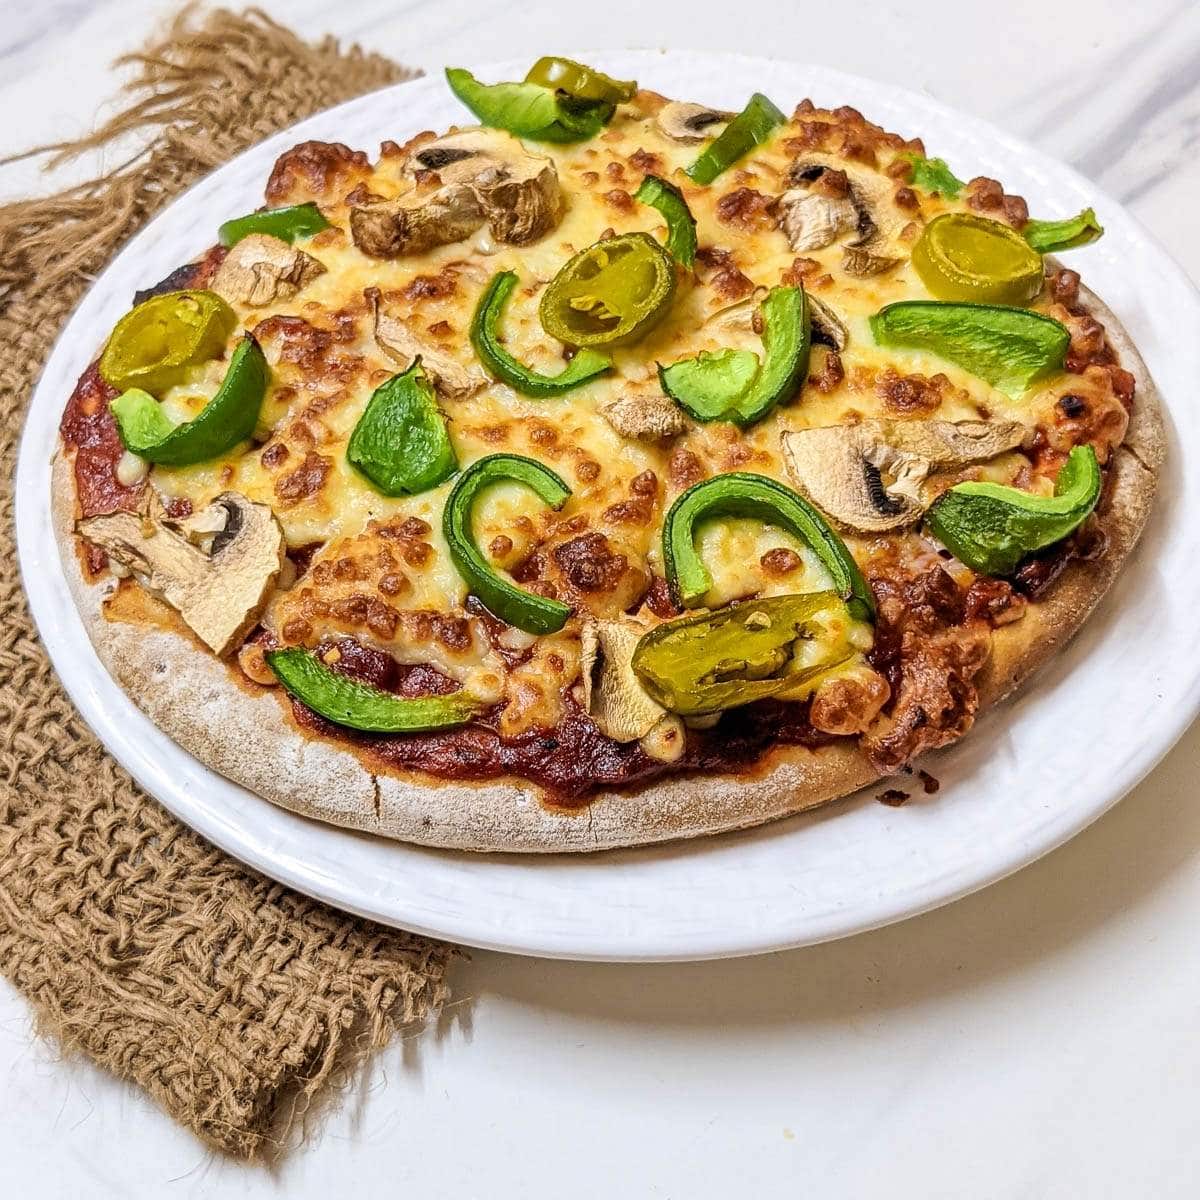 Air fryer Pizza - Rachna cooks